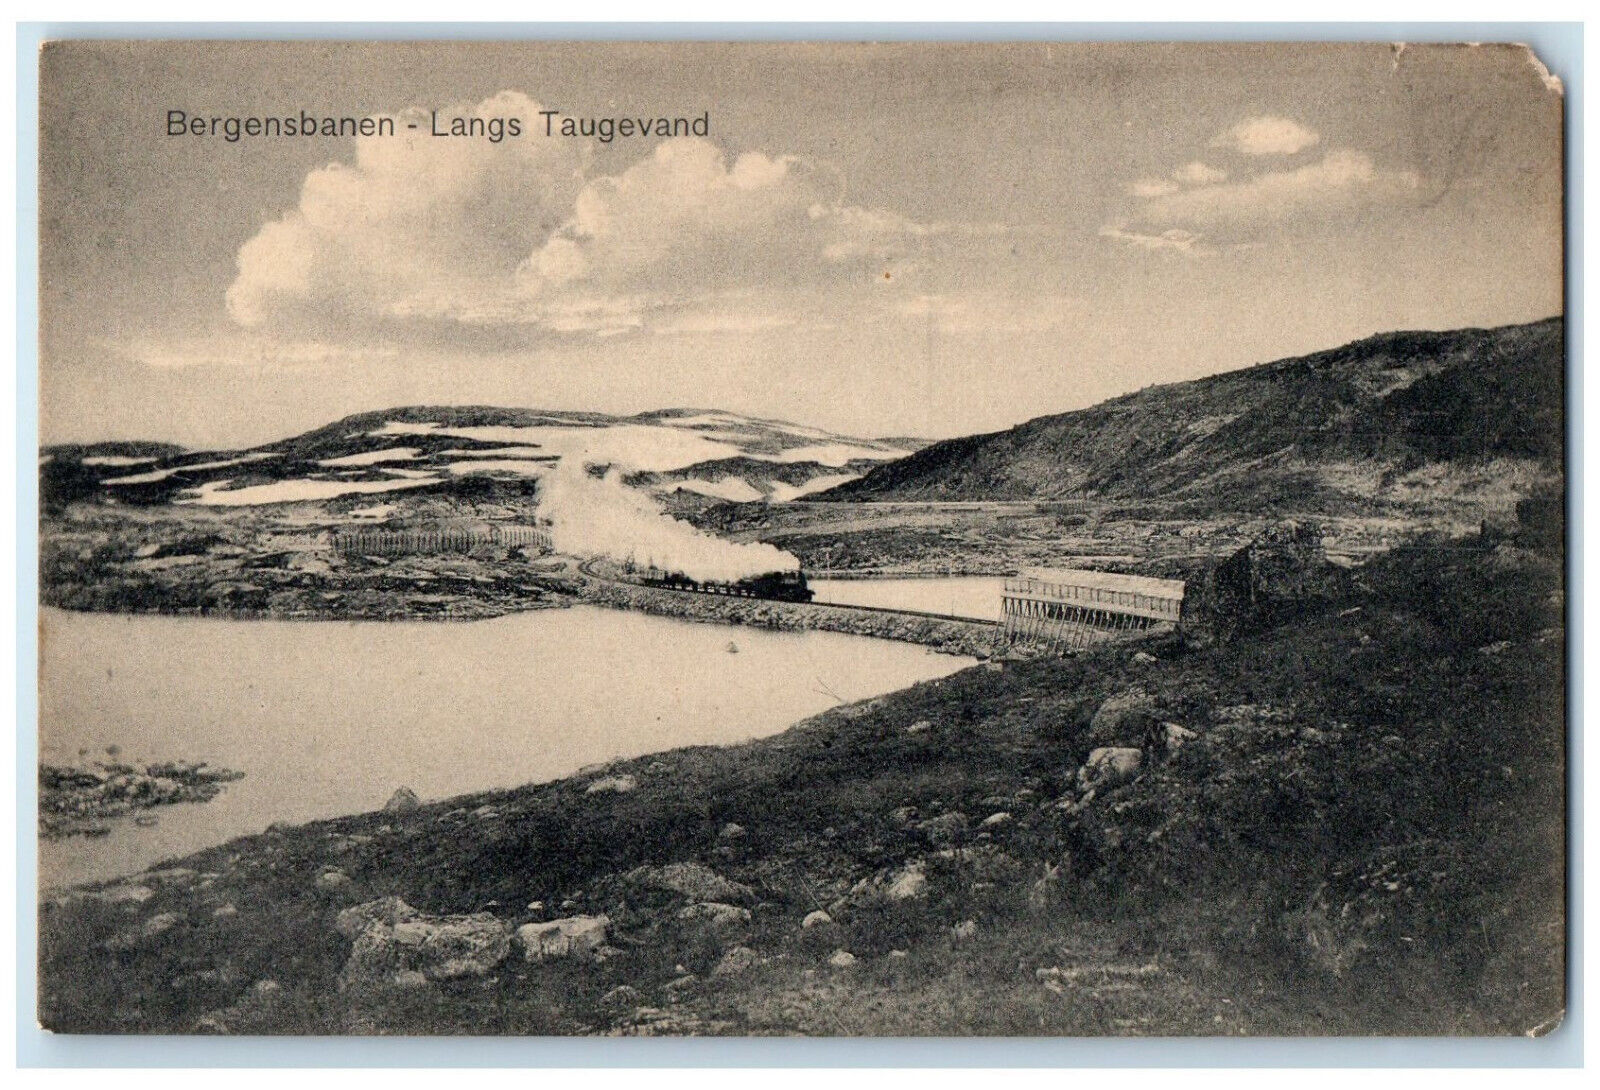 c1910 River Train Locomotive Bergensbanen-Langs Taugevand Norway Postcard